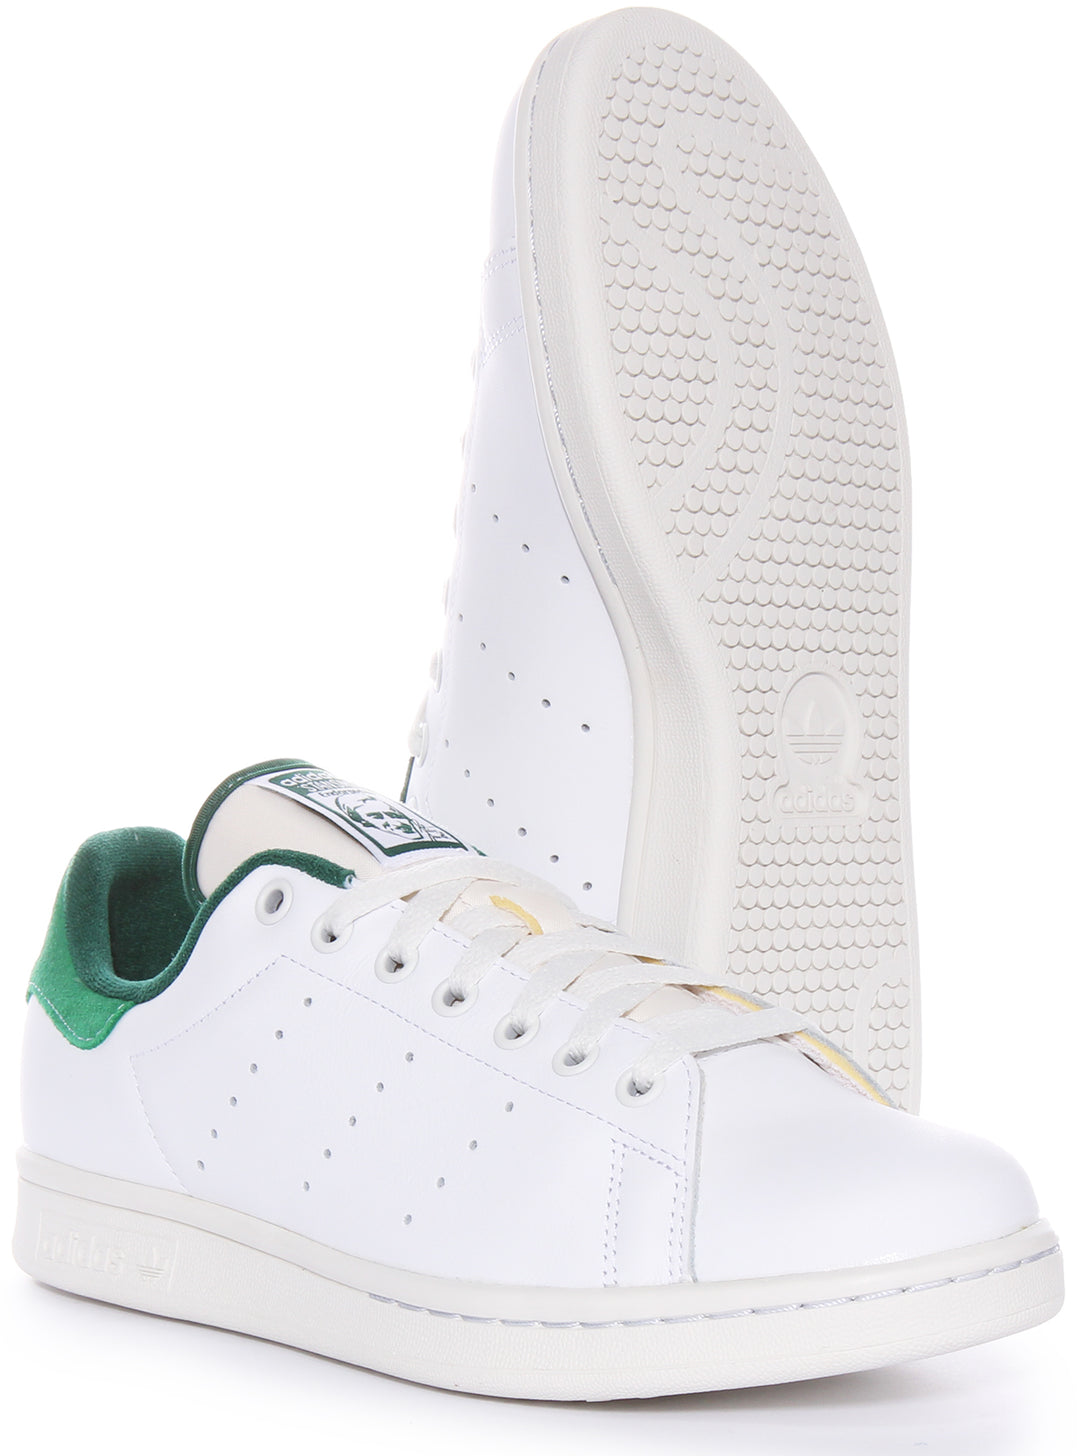 Adidas Stan Smith Klassischer Tennisschuh HerrenTrainer In Weiß Grün